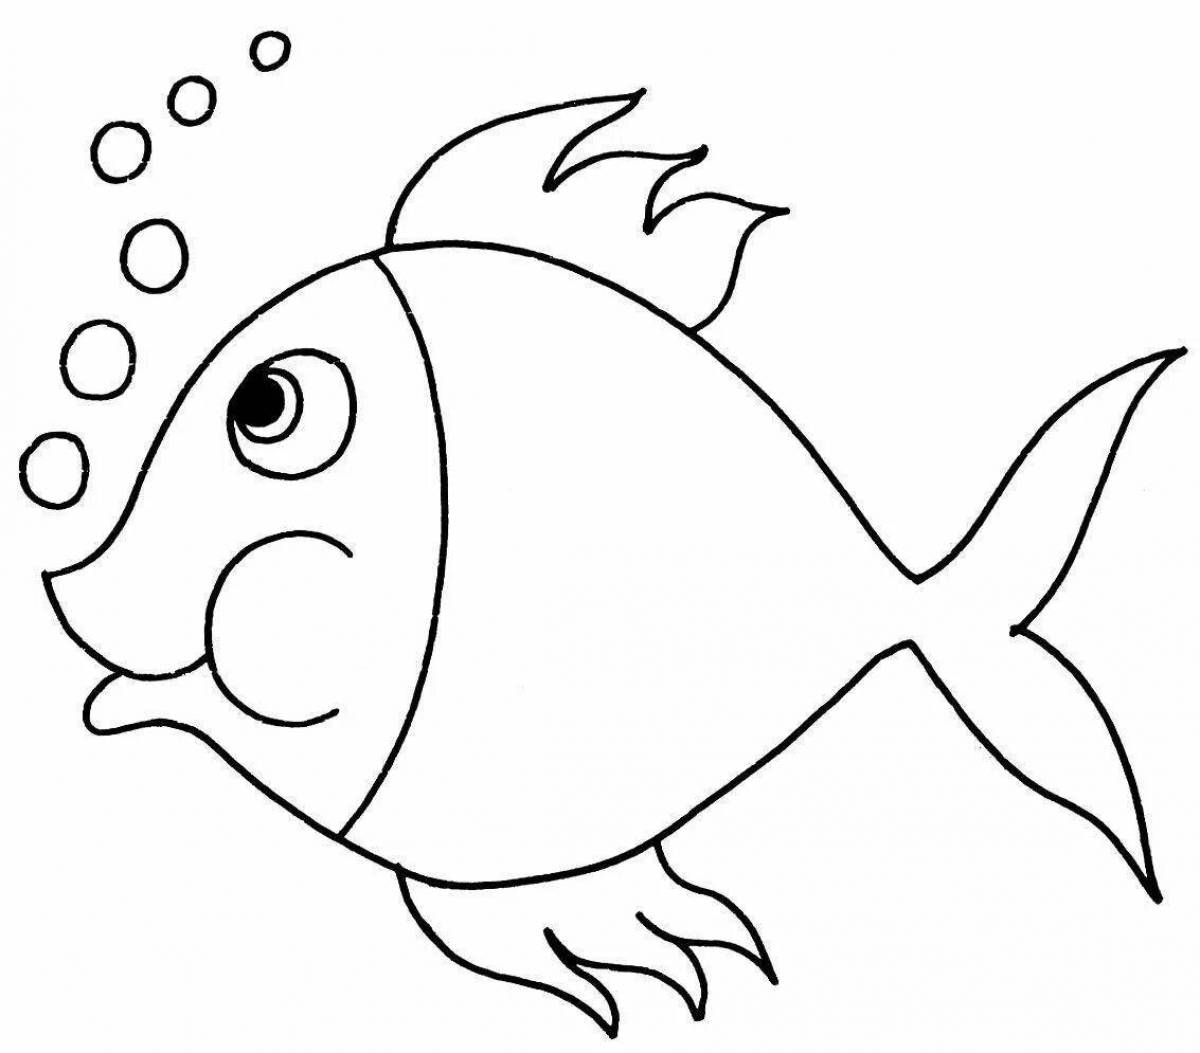 Fun simple fish coloring book